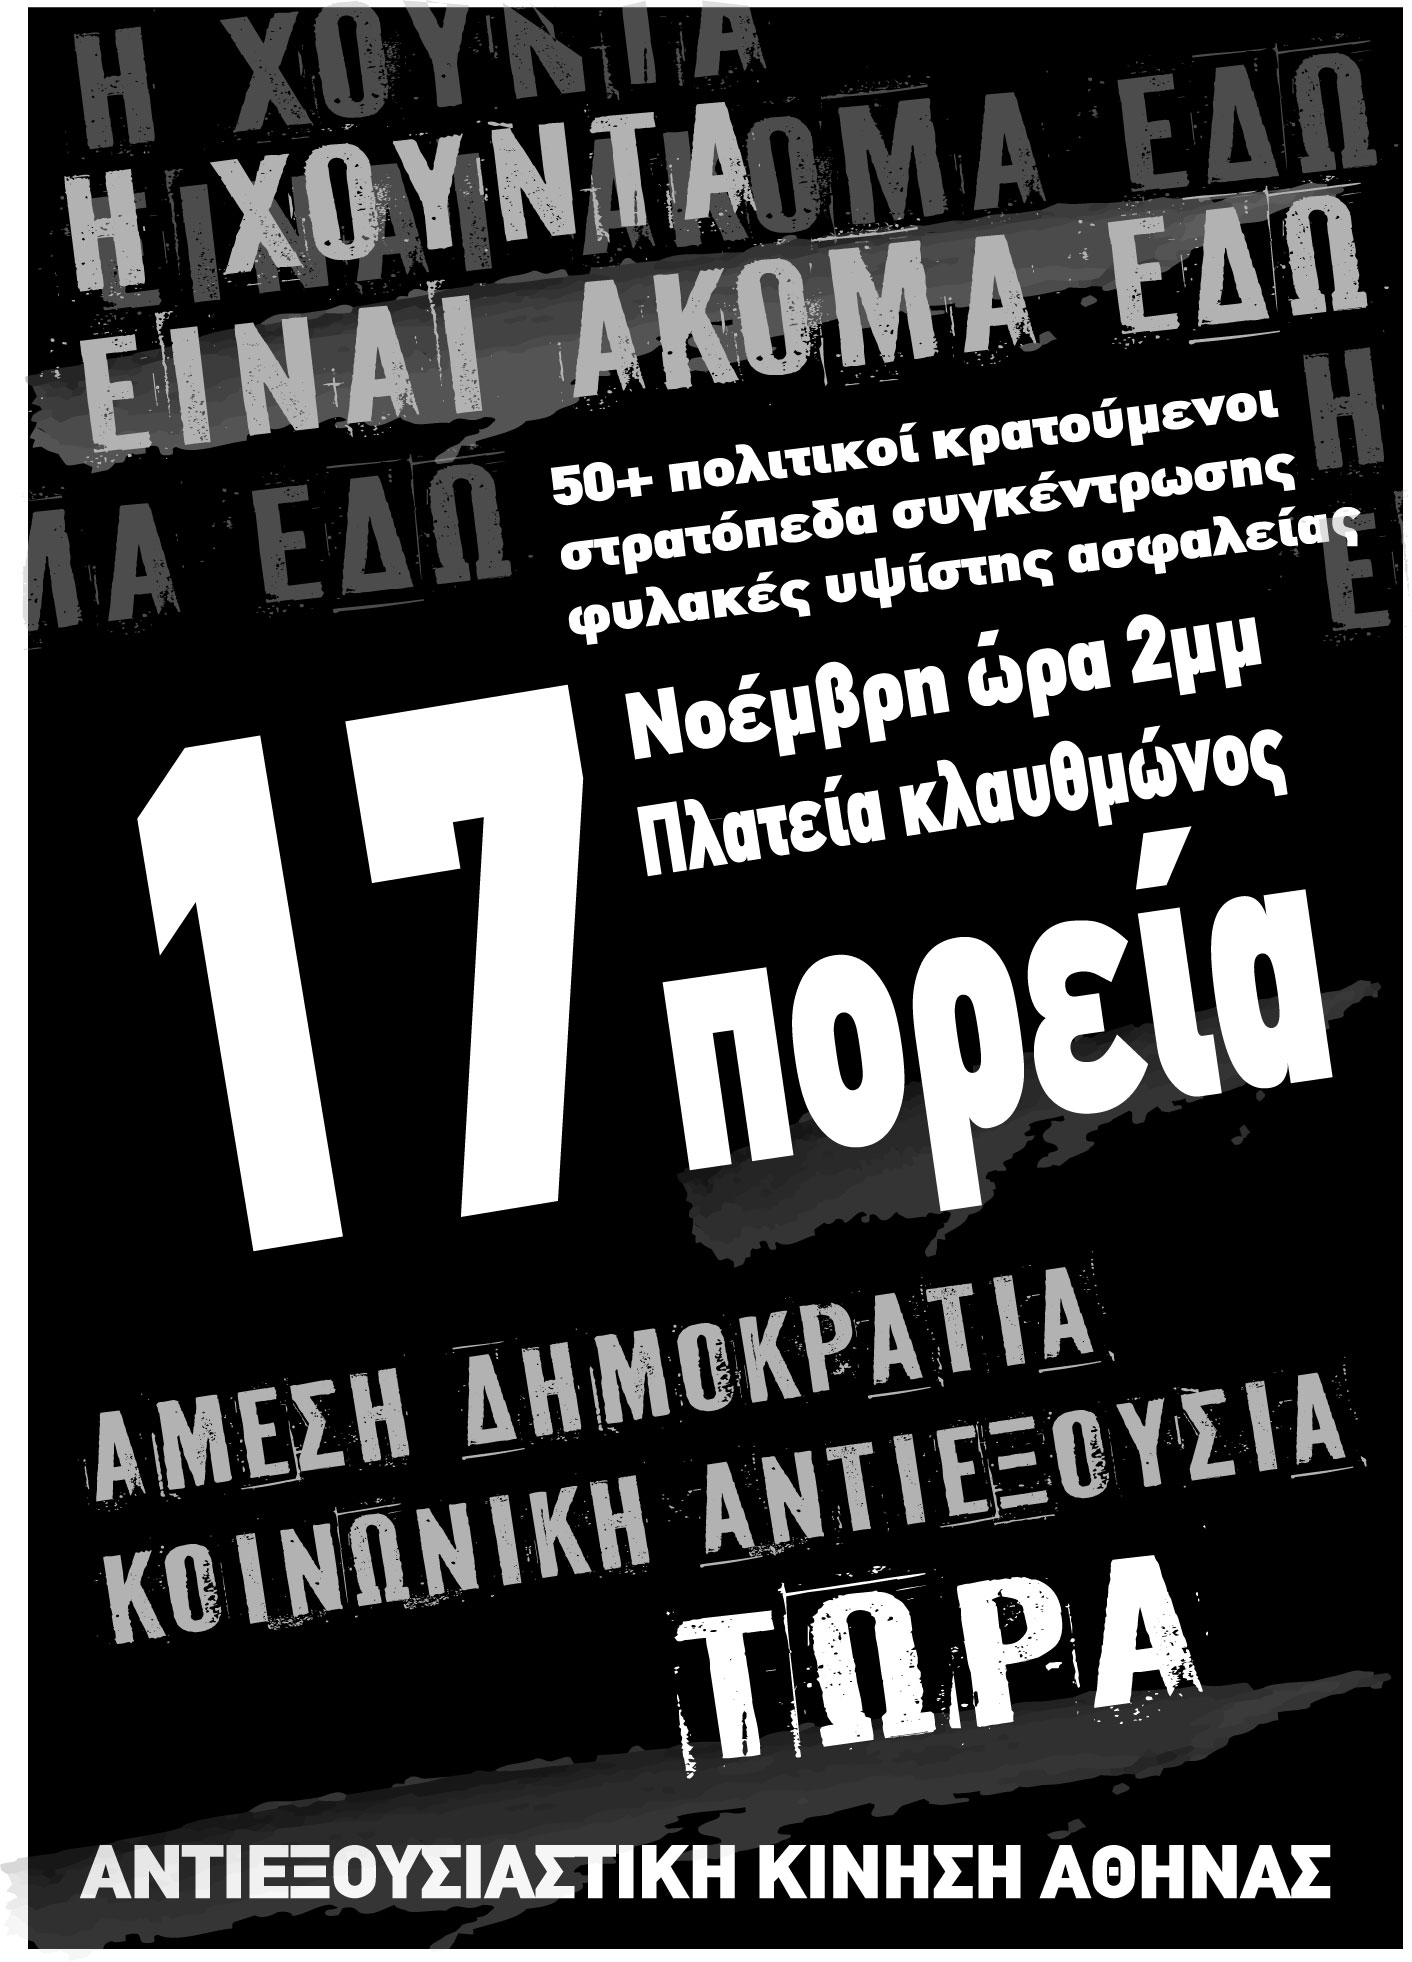 Αθήνα: Δευτέρα 17/11 – Καλέσματα από ομάδες/συλλογικότητες για την πορεία του Πολυτεχνείου